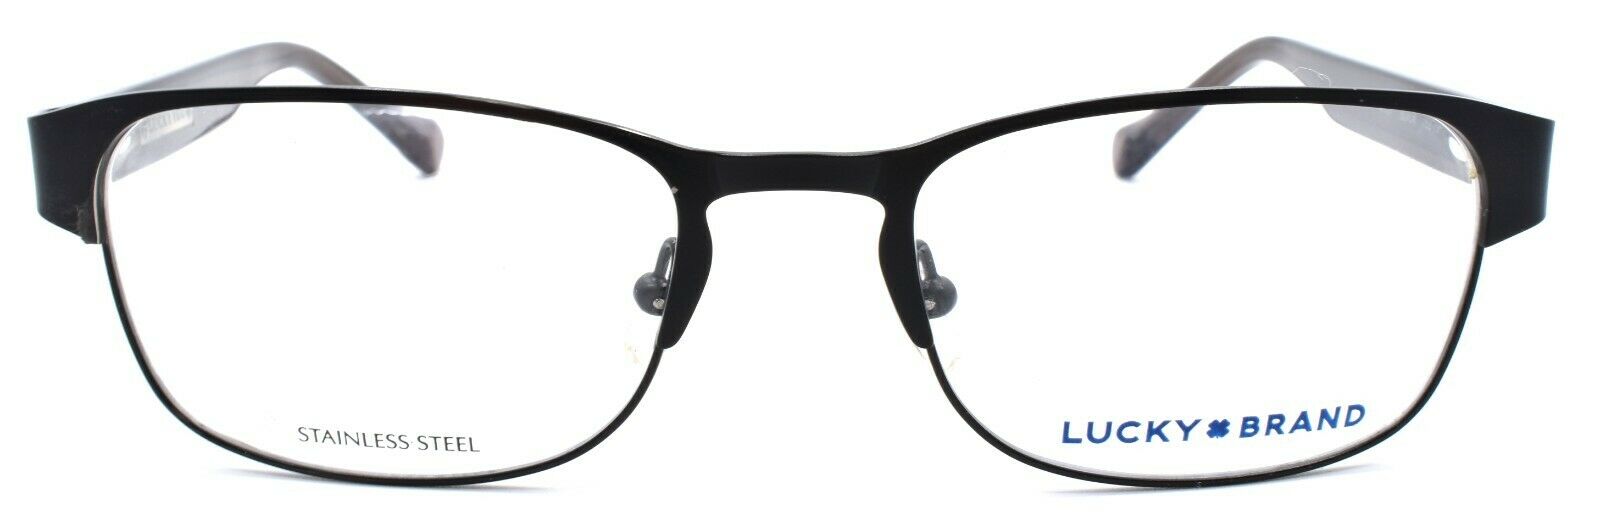 2-LUCKY BRAND Opportunist Men's Eyeglasses Frames 52-19-140 Black-751286248463-IKSpecs